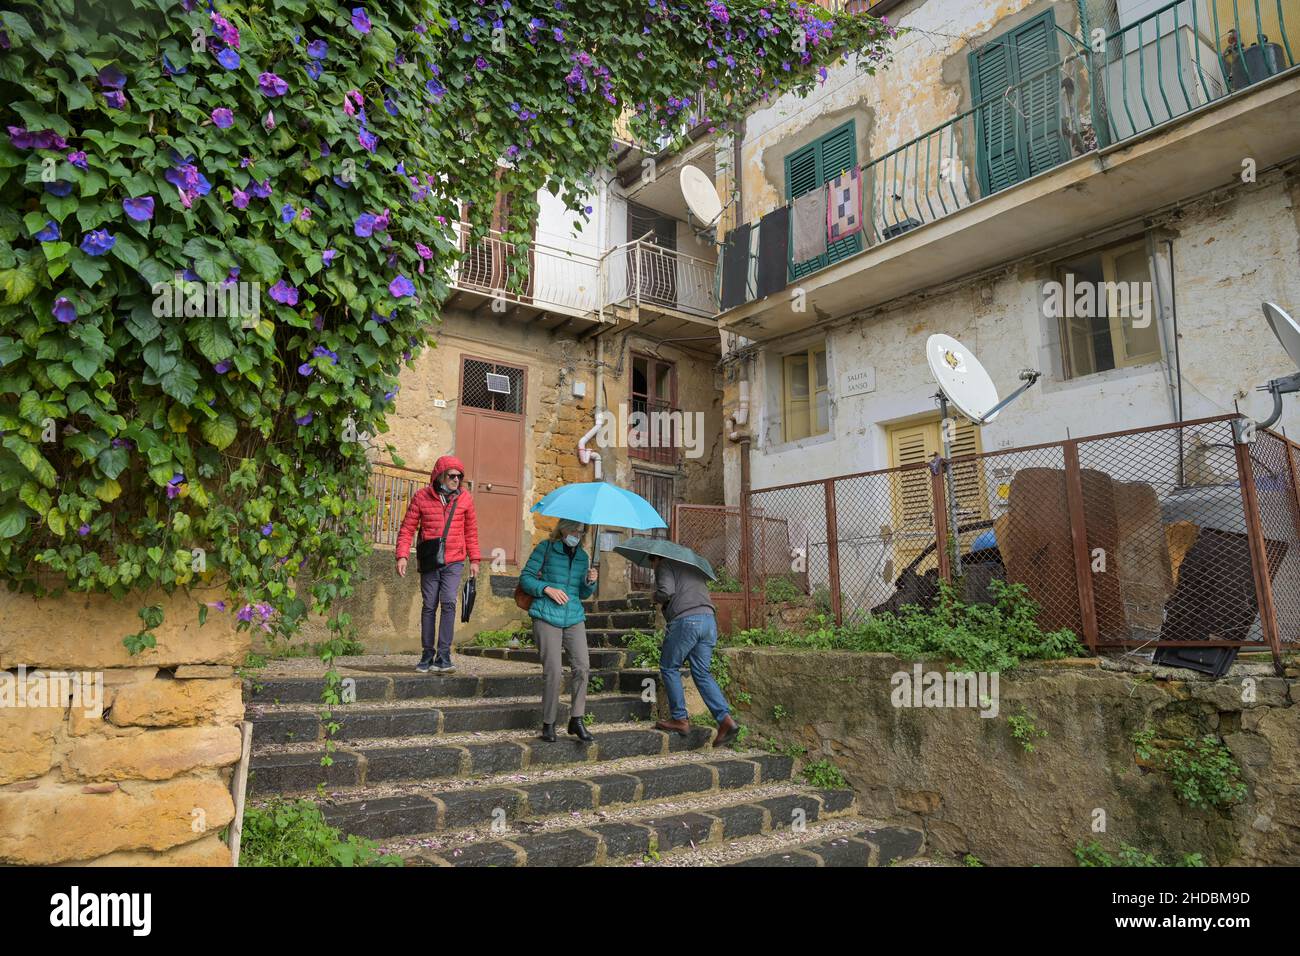 Gasse, Altstadt, Agrigent, Sizilien, Italien Stock Photo